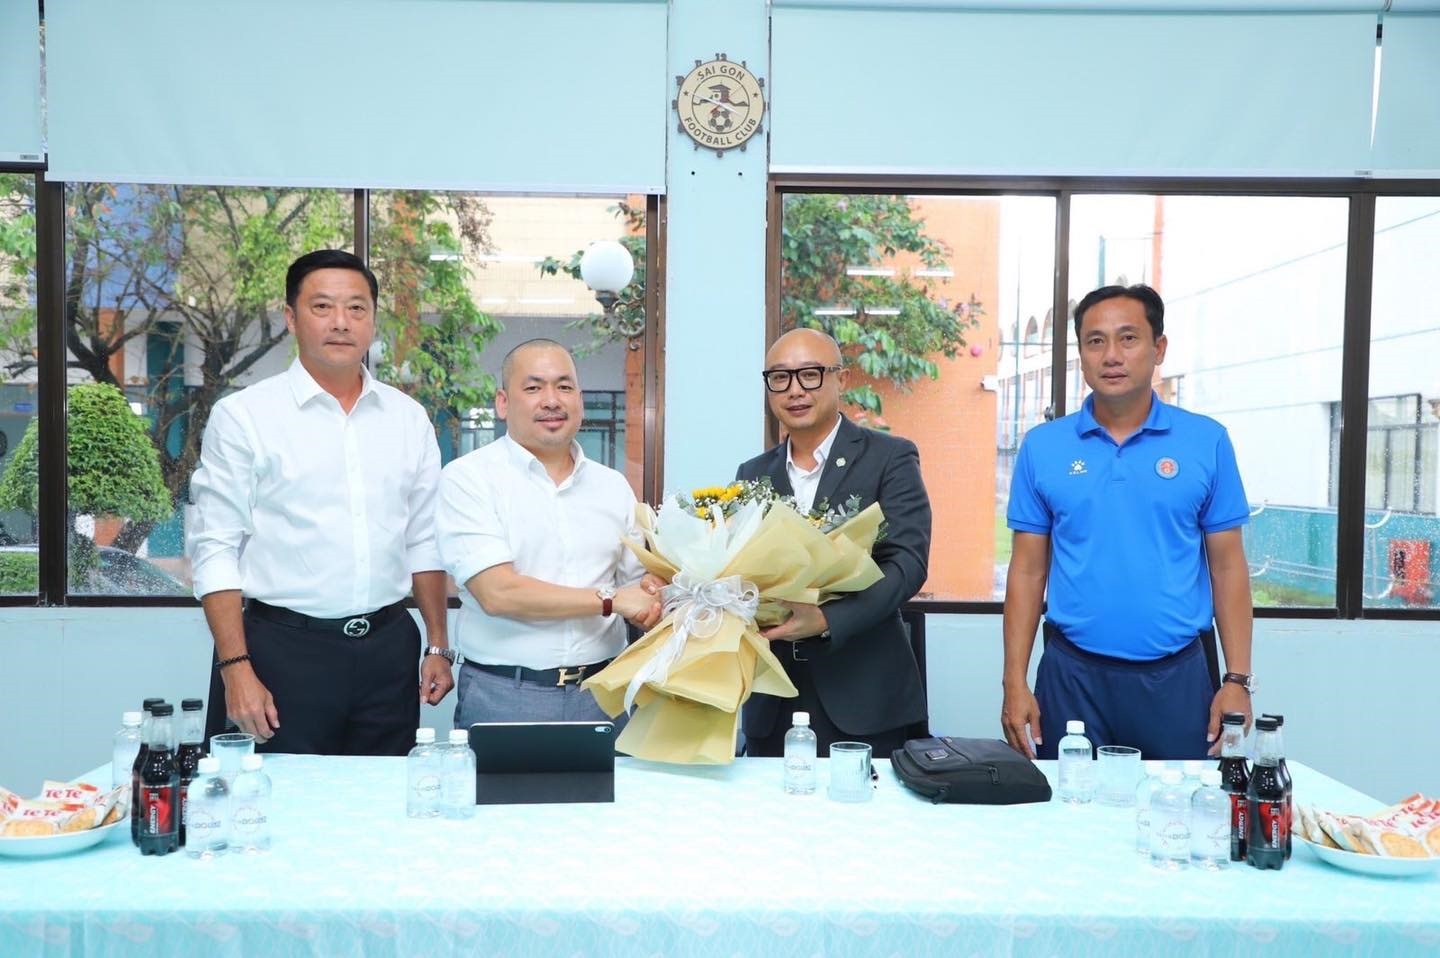 Tân chủ tịch đội Sài Gòn cam kết cải thiện thành tích, chất lượng đội bóng